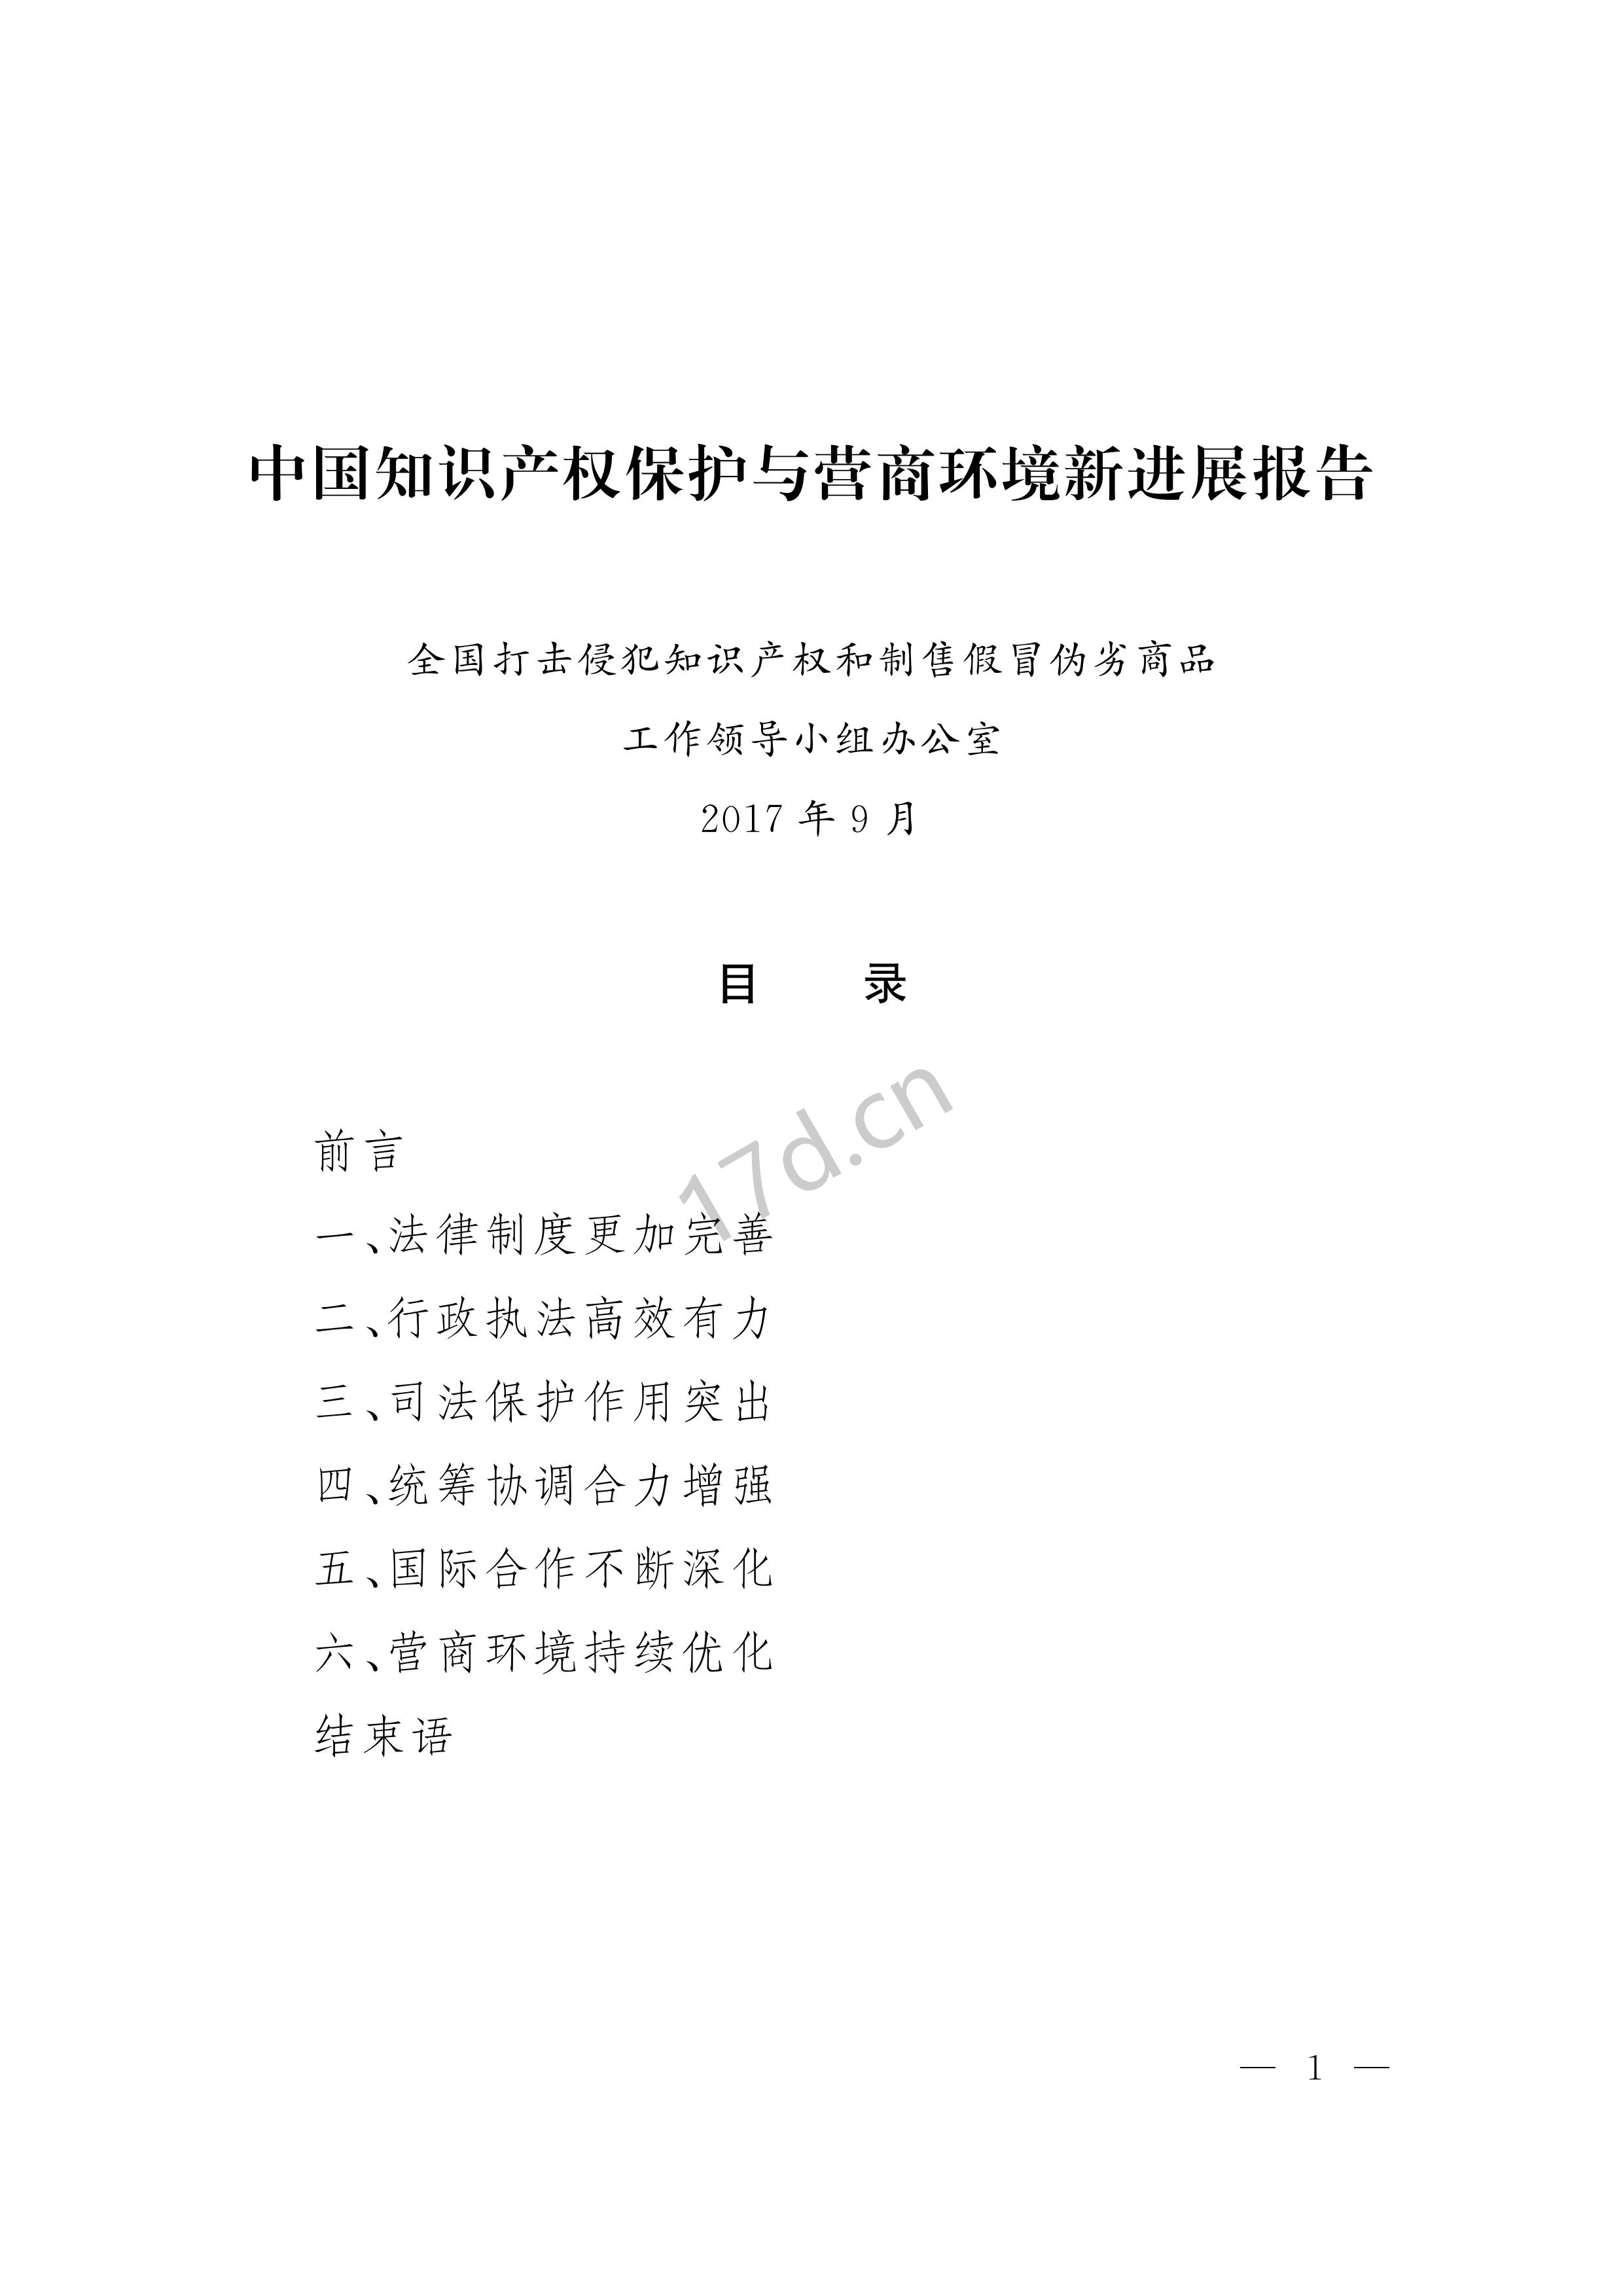 中国知识产权保护与营商环境新进展报告_00.jpg